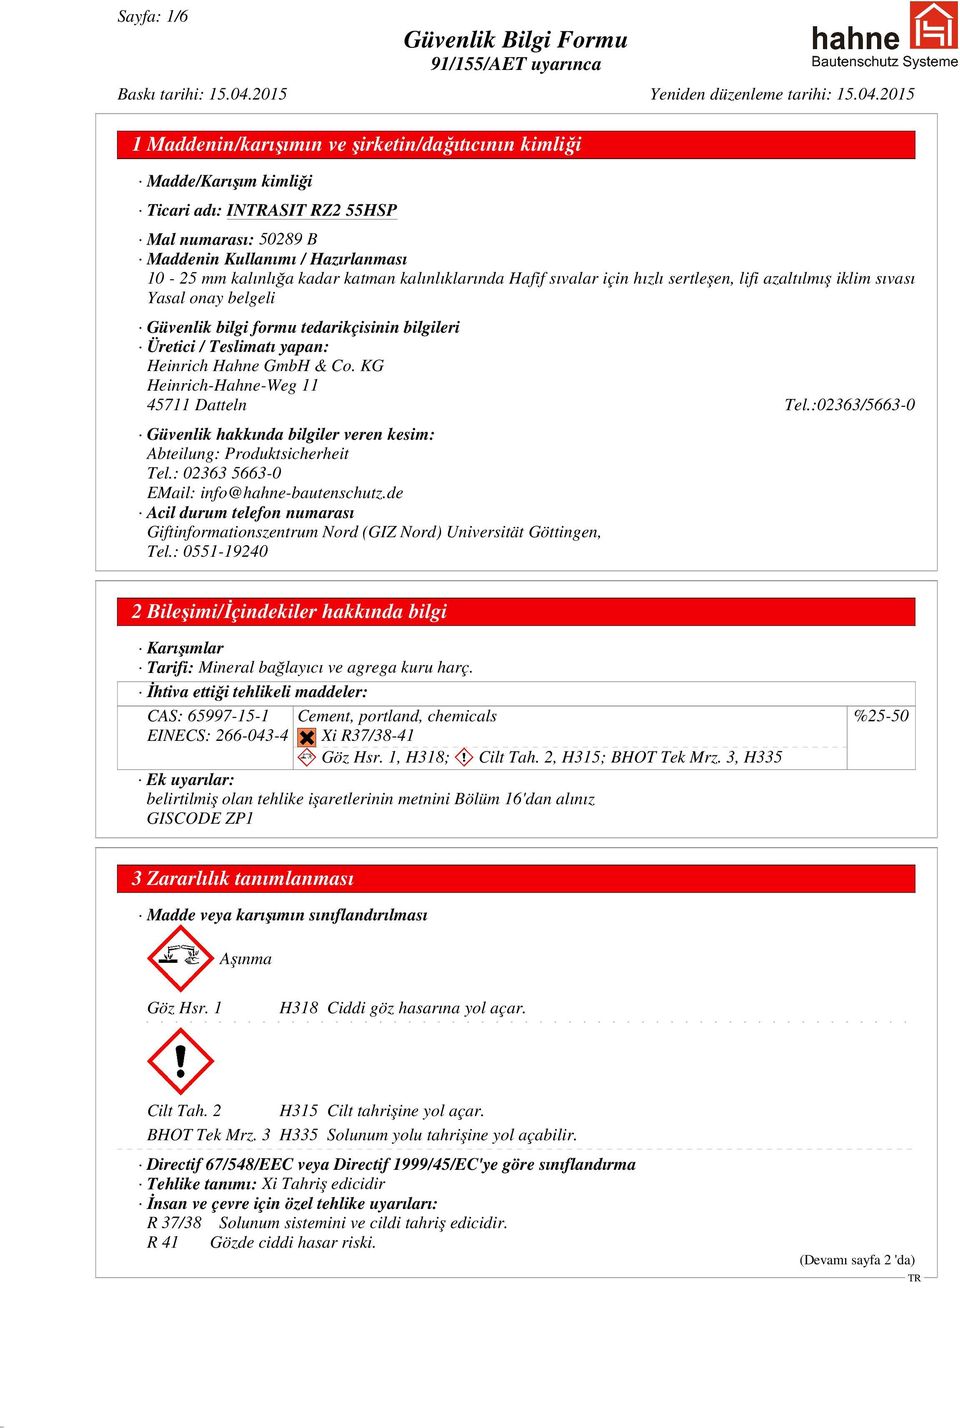 & Co. KG Heinrich-Hahne-Weg 11 45711 Datteln Tel.:02363/5663-0 Güvenlik hakkında bilgiler veren kesim: Abteilung: Produktsicherheit Tel.: 02363 5663-0 EMail: info@hahne-bautenschutz.